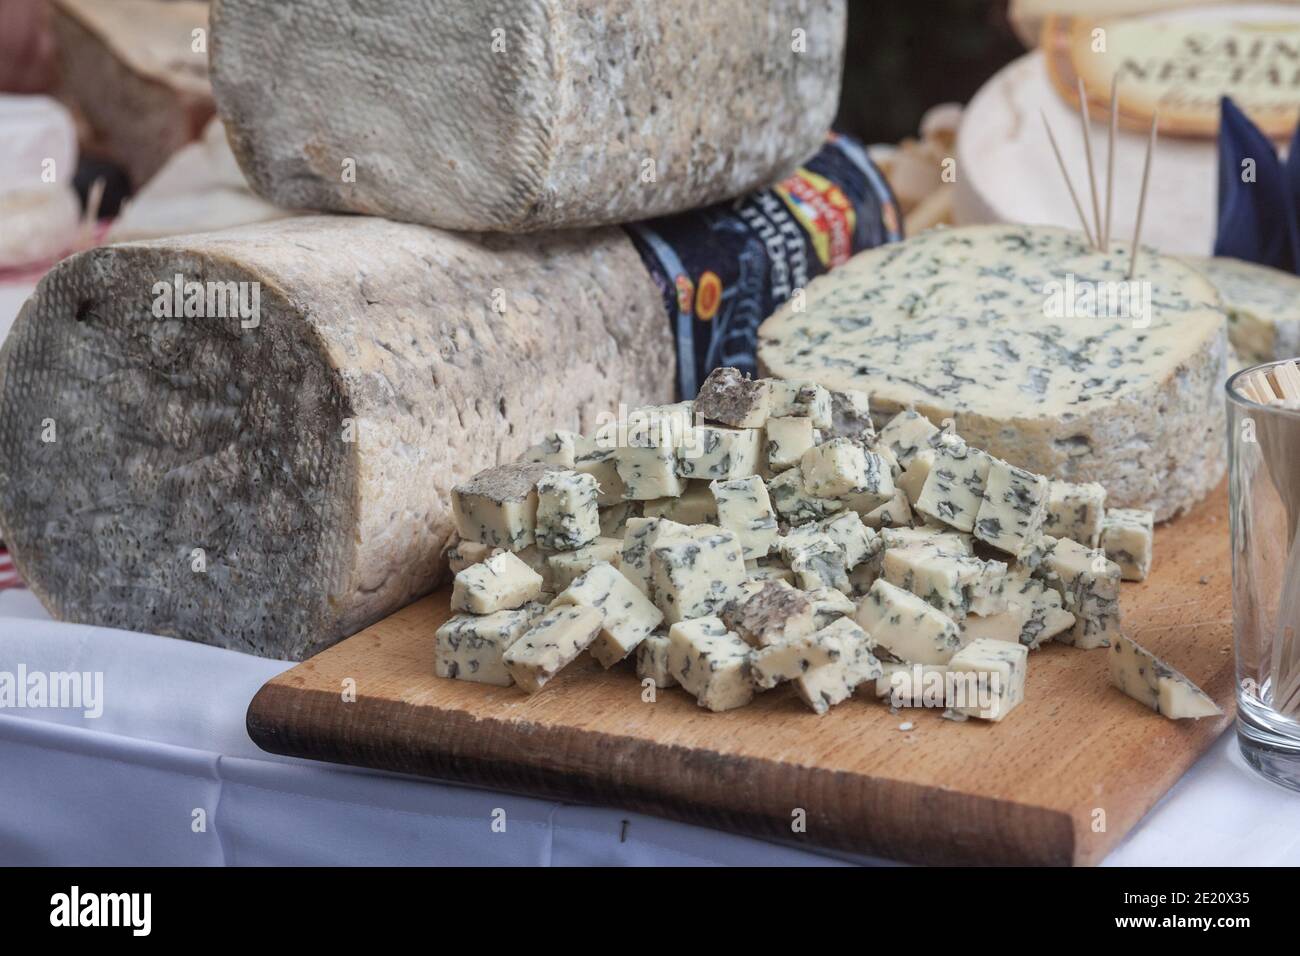 PARIS, FRANCE - 12 JUILLET 2019 : fromage Fourme d'Ambert tranché sur une table. Fourme dambert est un fromage bleu typique de la région d'Auvergne p Banque D'Images